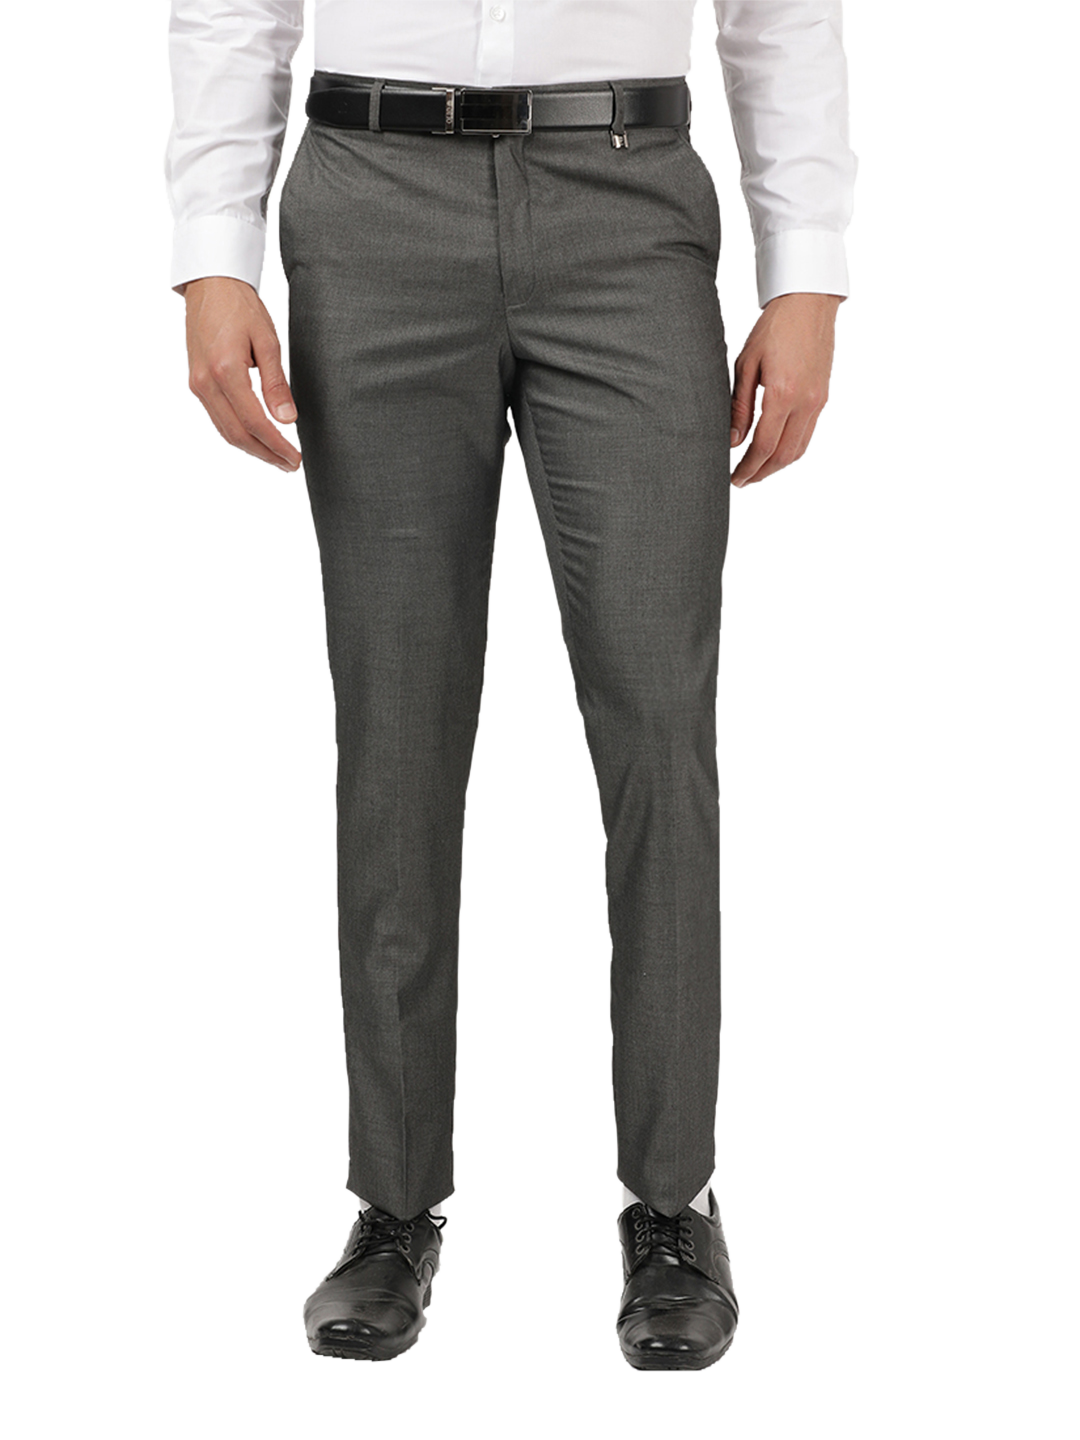 OTTO - Grey Formal Core Trousers - NEWPORT_2 – ottostore.com